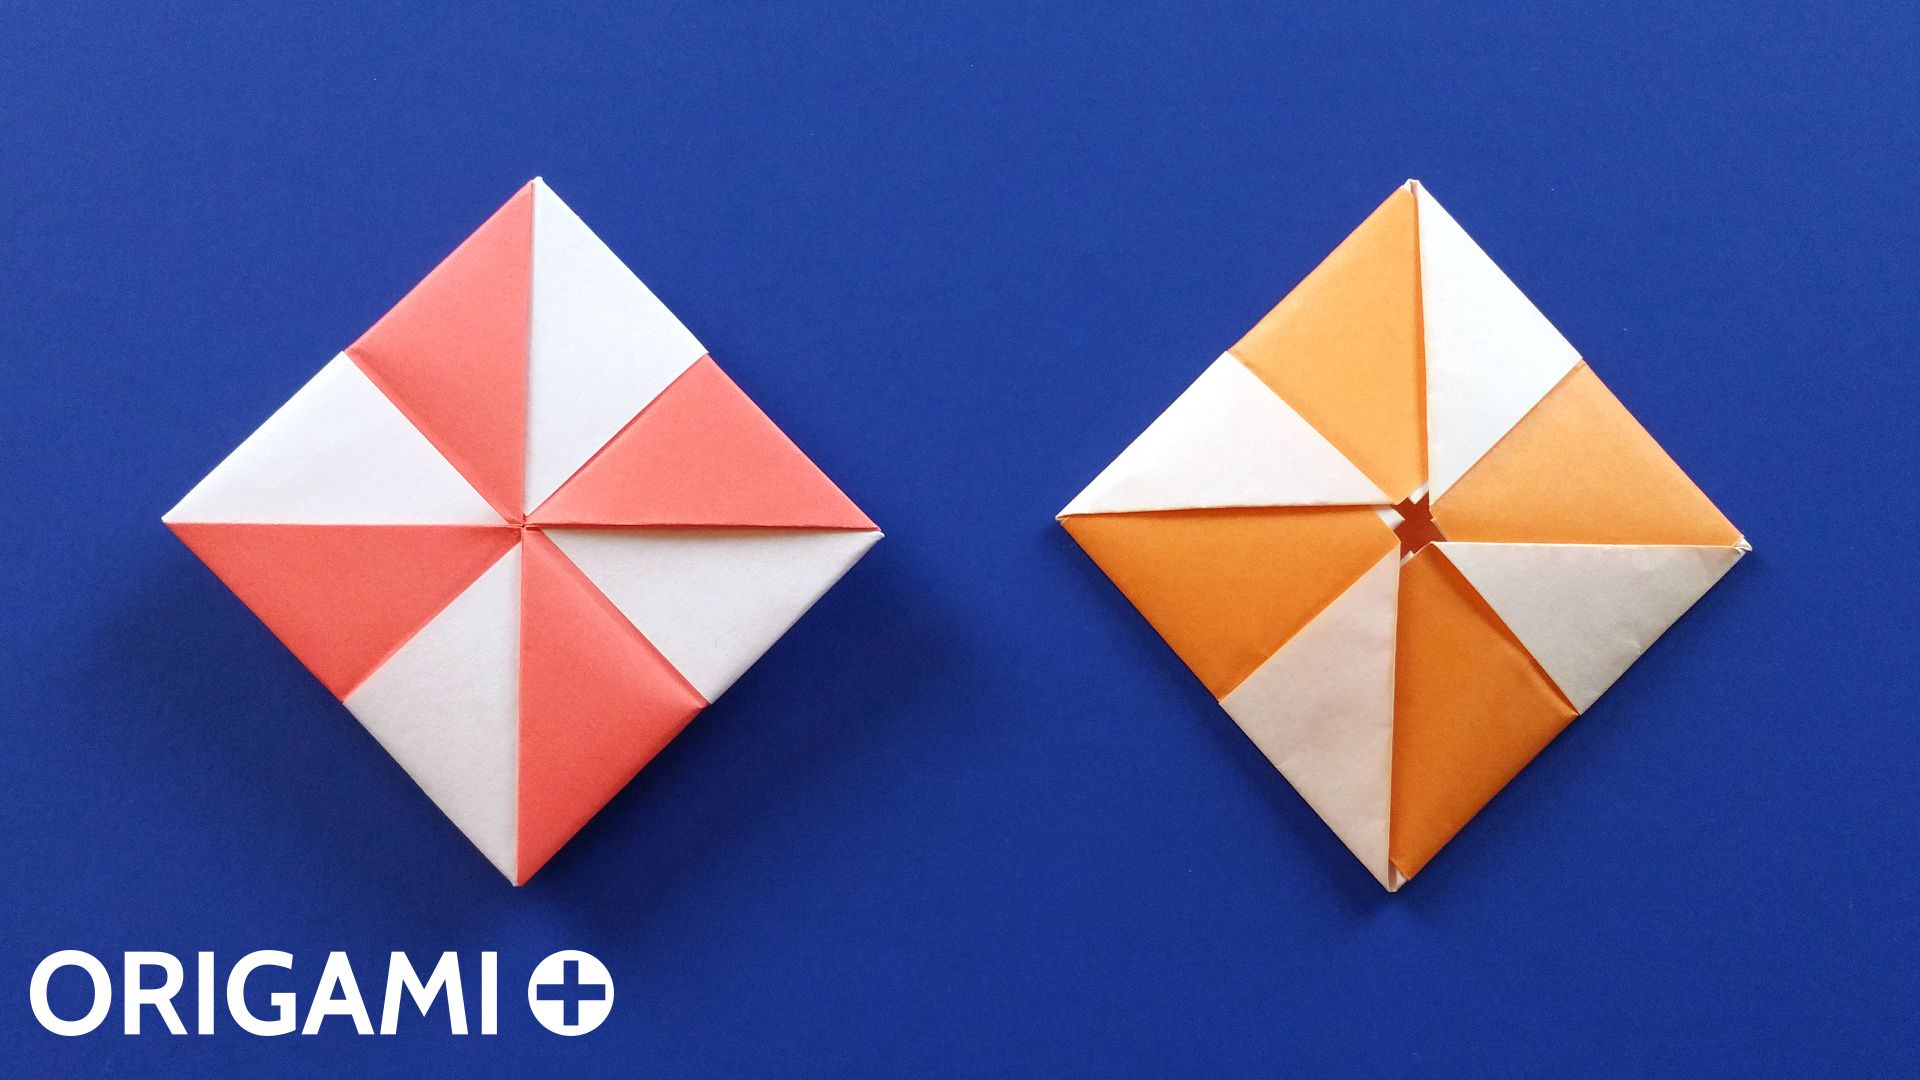 Enveloppe Moulin à Vent en origami